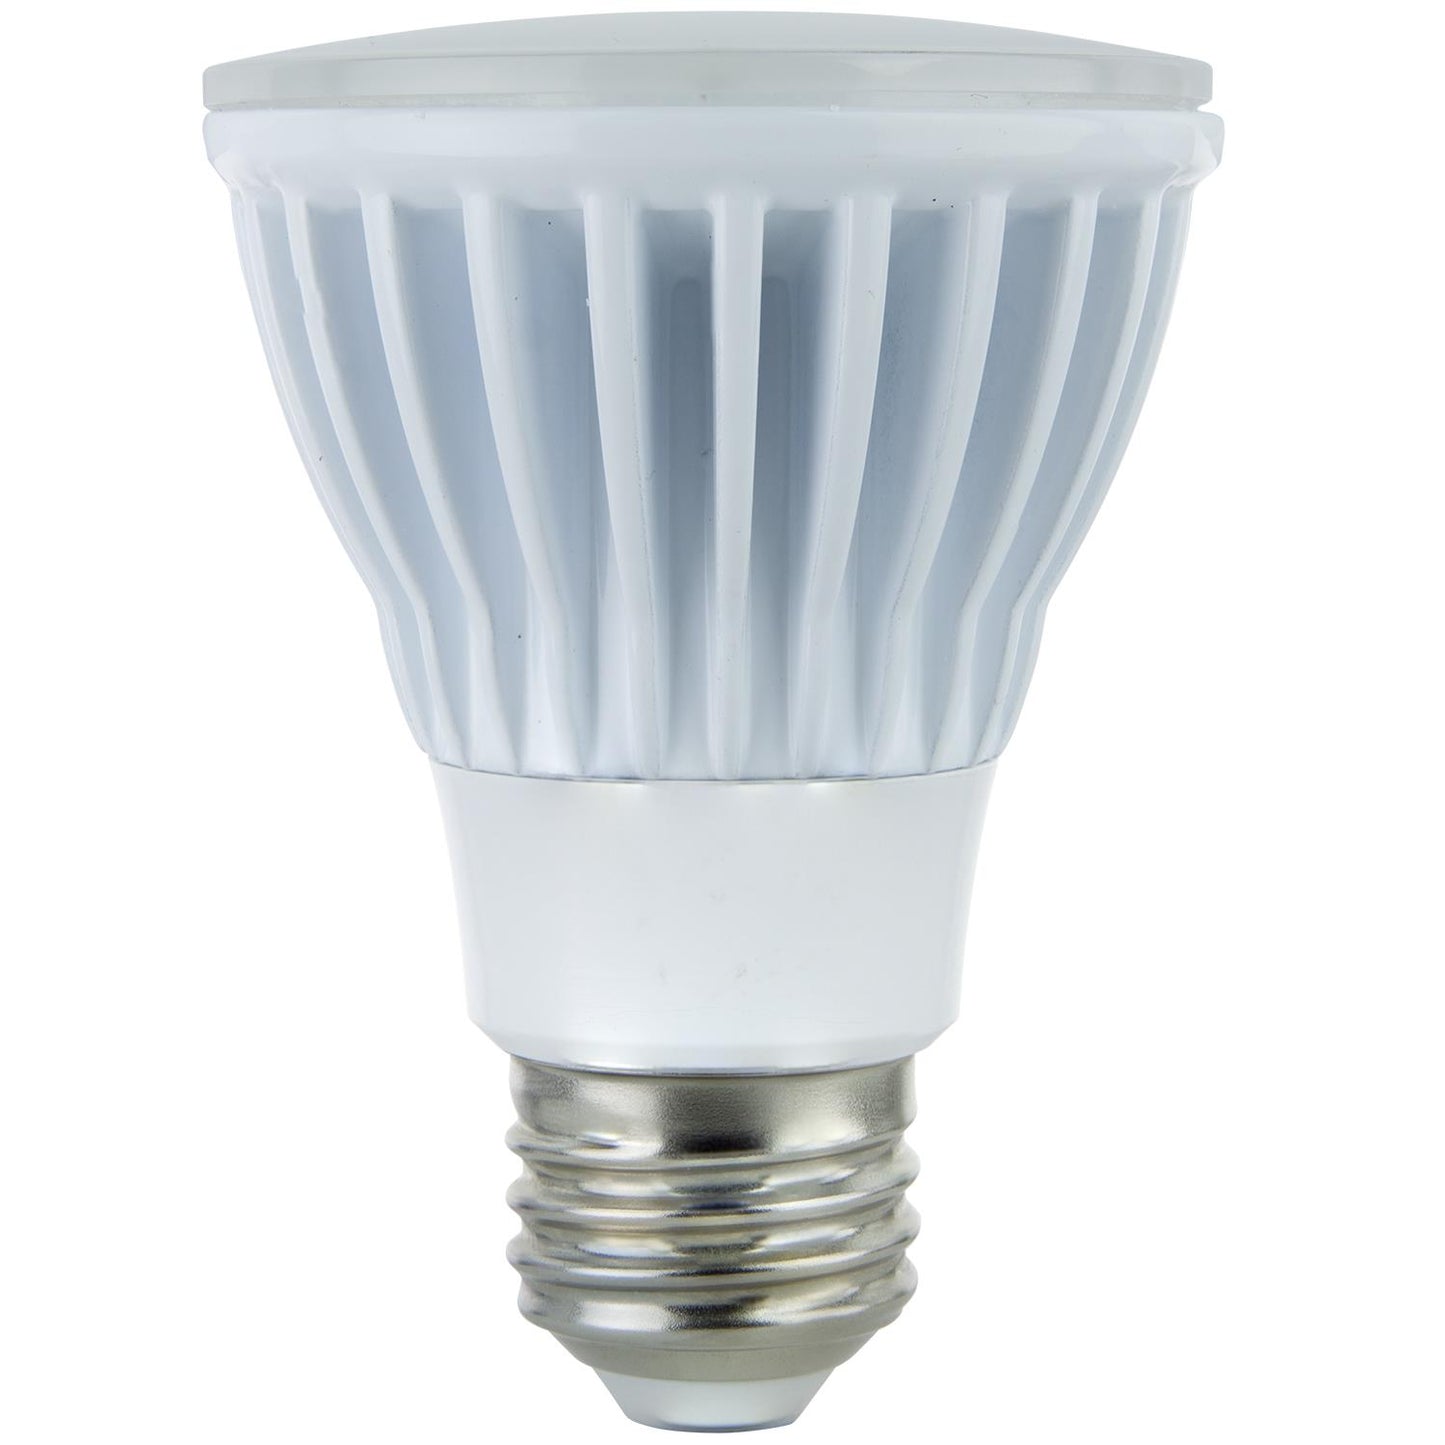 Sunlite PAR20 High Lumen Reflector, 600 Lumens, Medium Base Light Bulb, White